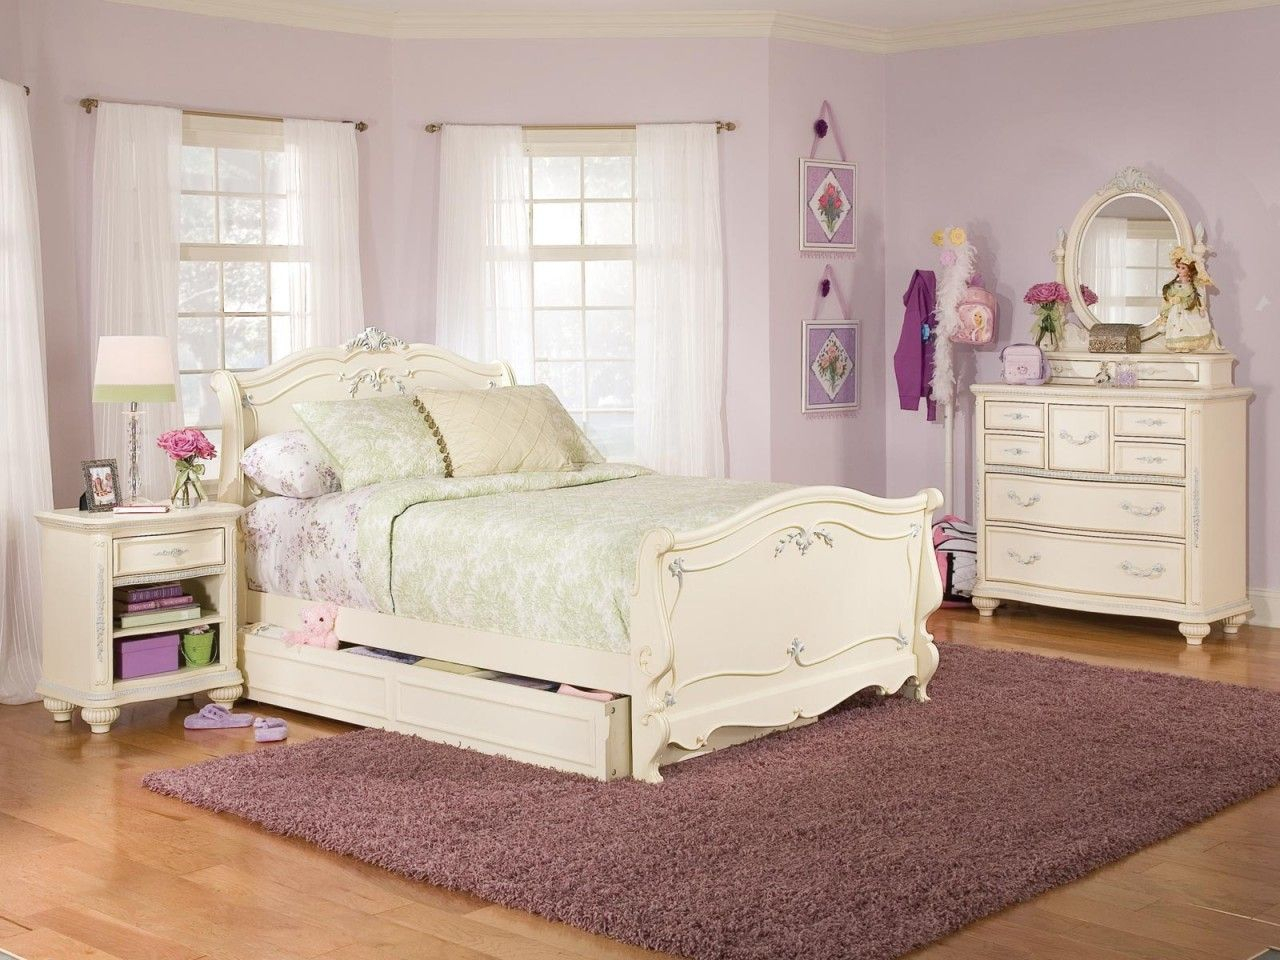 Girls Bedroom Furniture Sets Girls Black Bedroom Set Kids Twin Bed intended for proportions 1280 X 960